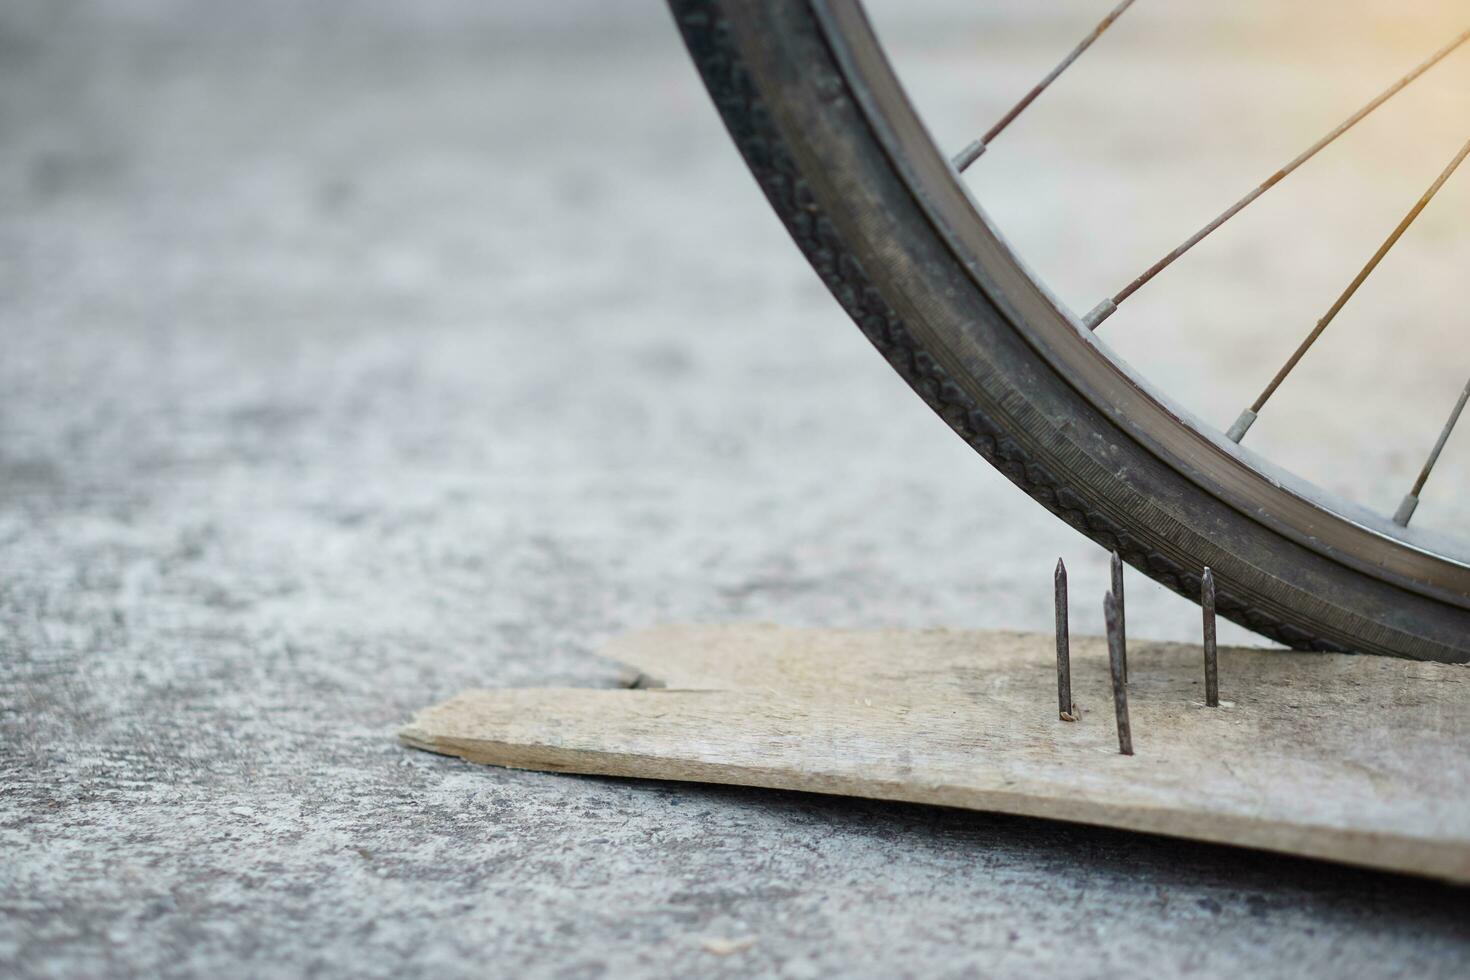 proche en haut ongles sur bois planche et plat vélo pneu. concept, peu sûr , dommage. être prudent et Regardez autour pendant cyclisme sur le sol ou risque lieux. accident pouvez être arrivé. photo